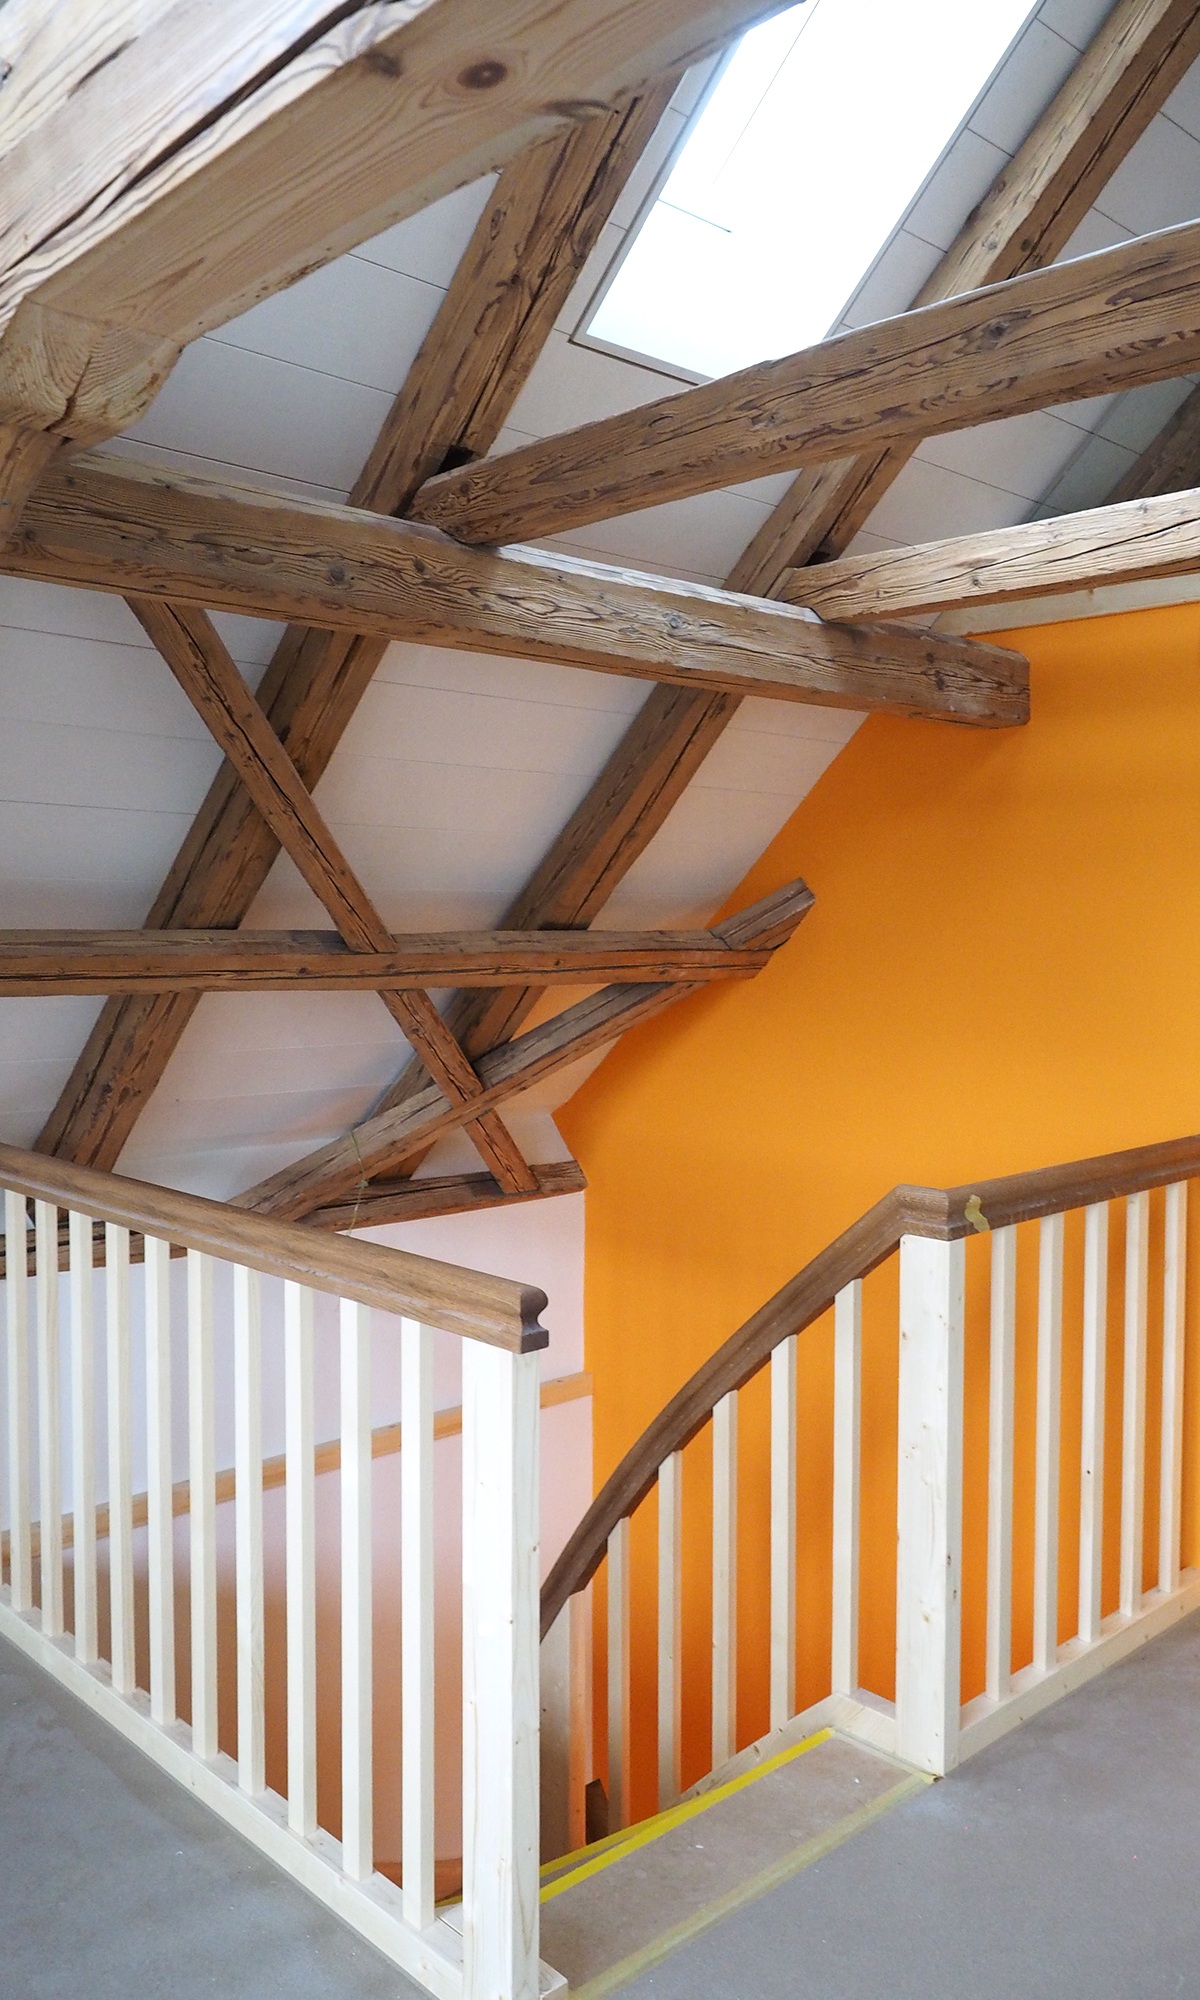 Rohbau vom Treppenaufstieg zum Dachgeschoss des Einfamilienhauses. Das Dach ist komplett verkleidet mit Holzbalken.